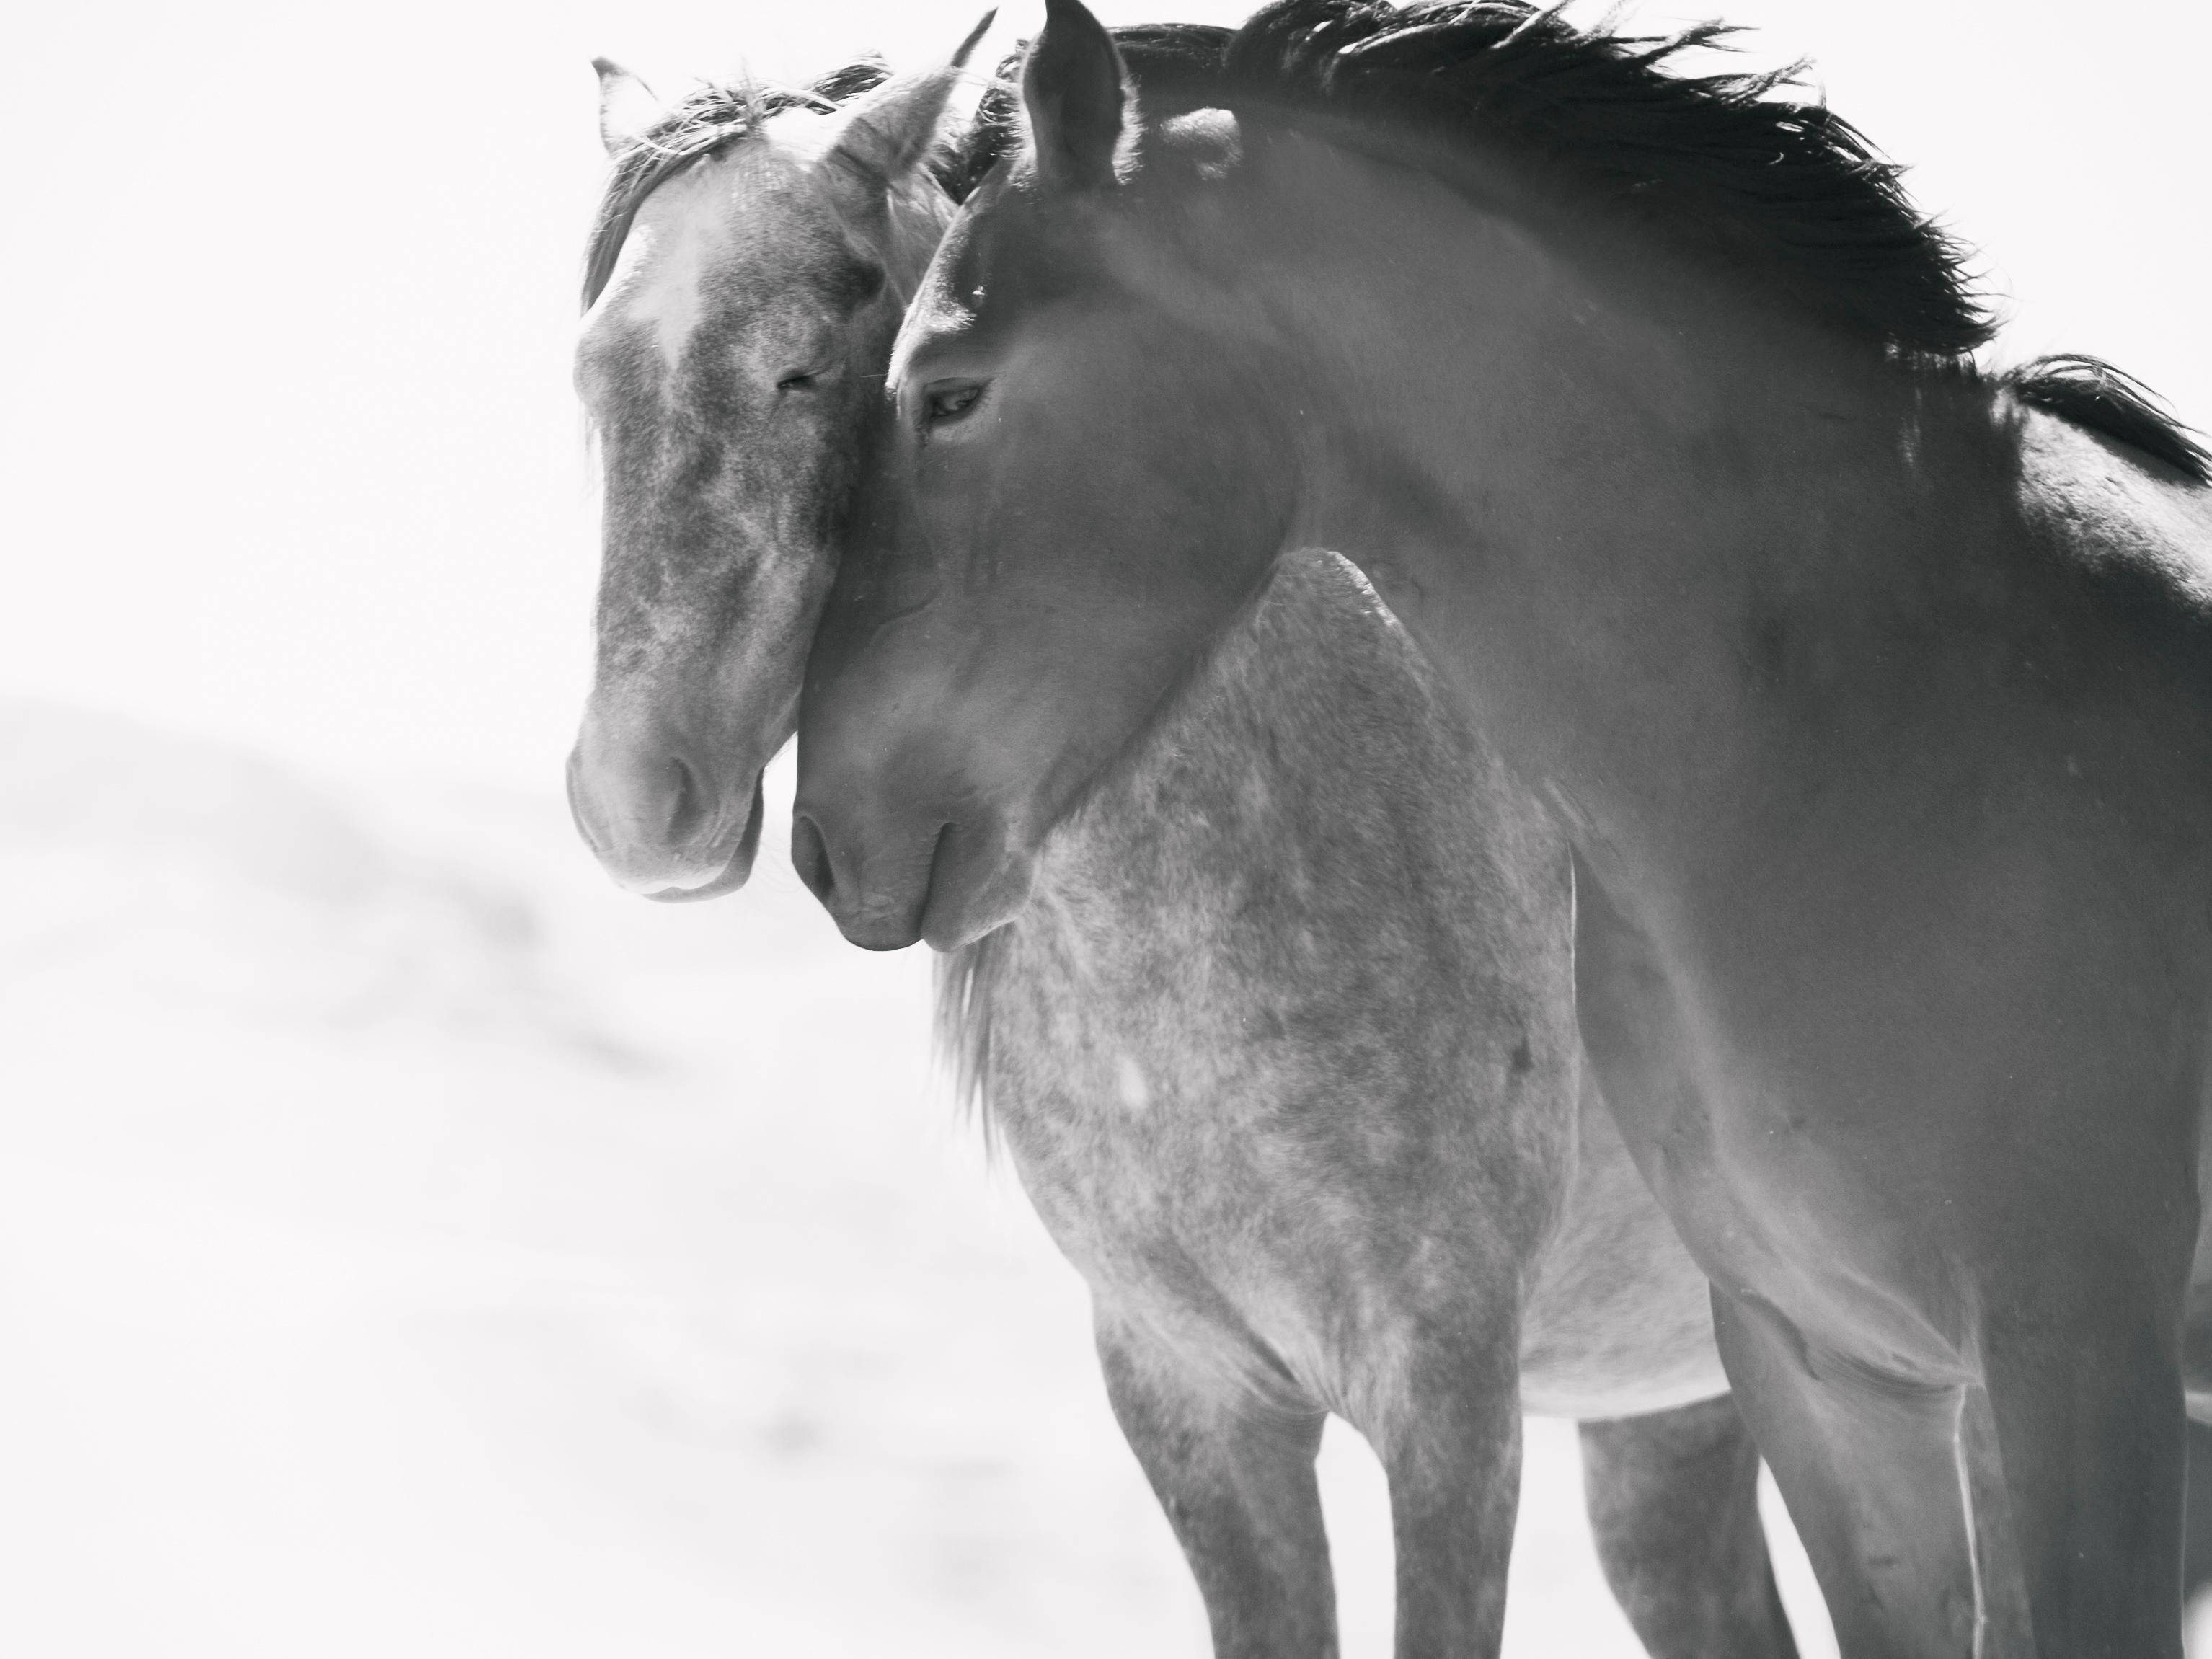 Black and White Photograph Shane Russeck - "Soulmates" 36x48 Photographie en noir et blanc Chevaux sauvages, Mustangs Signée AP 